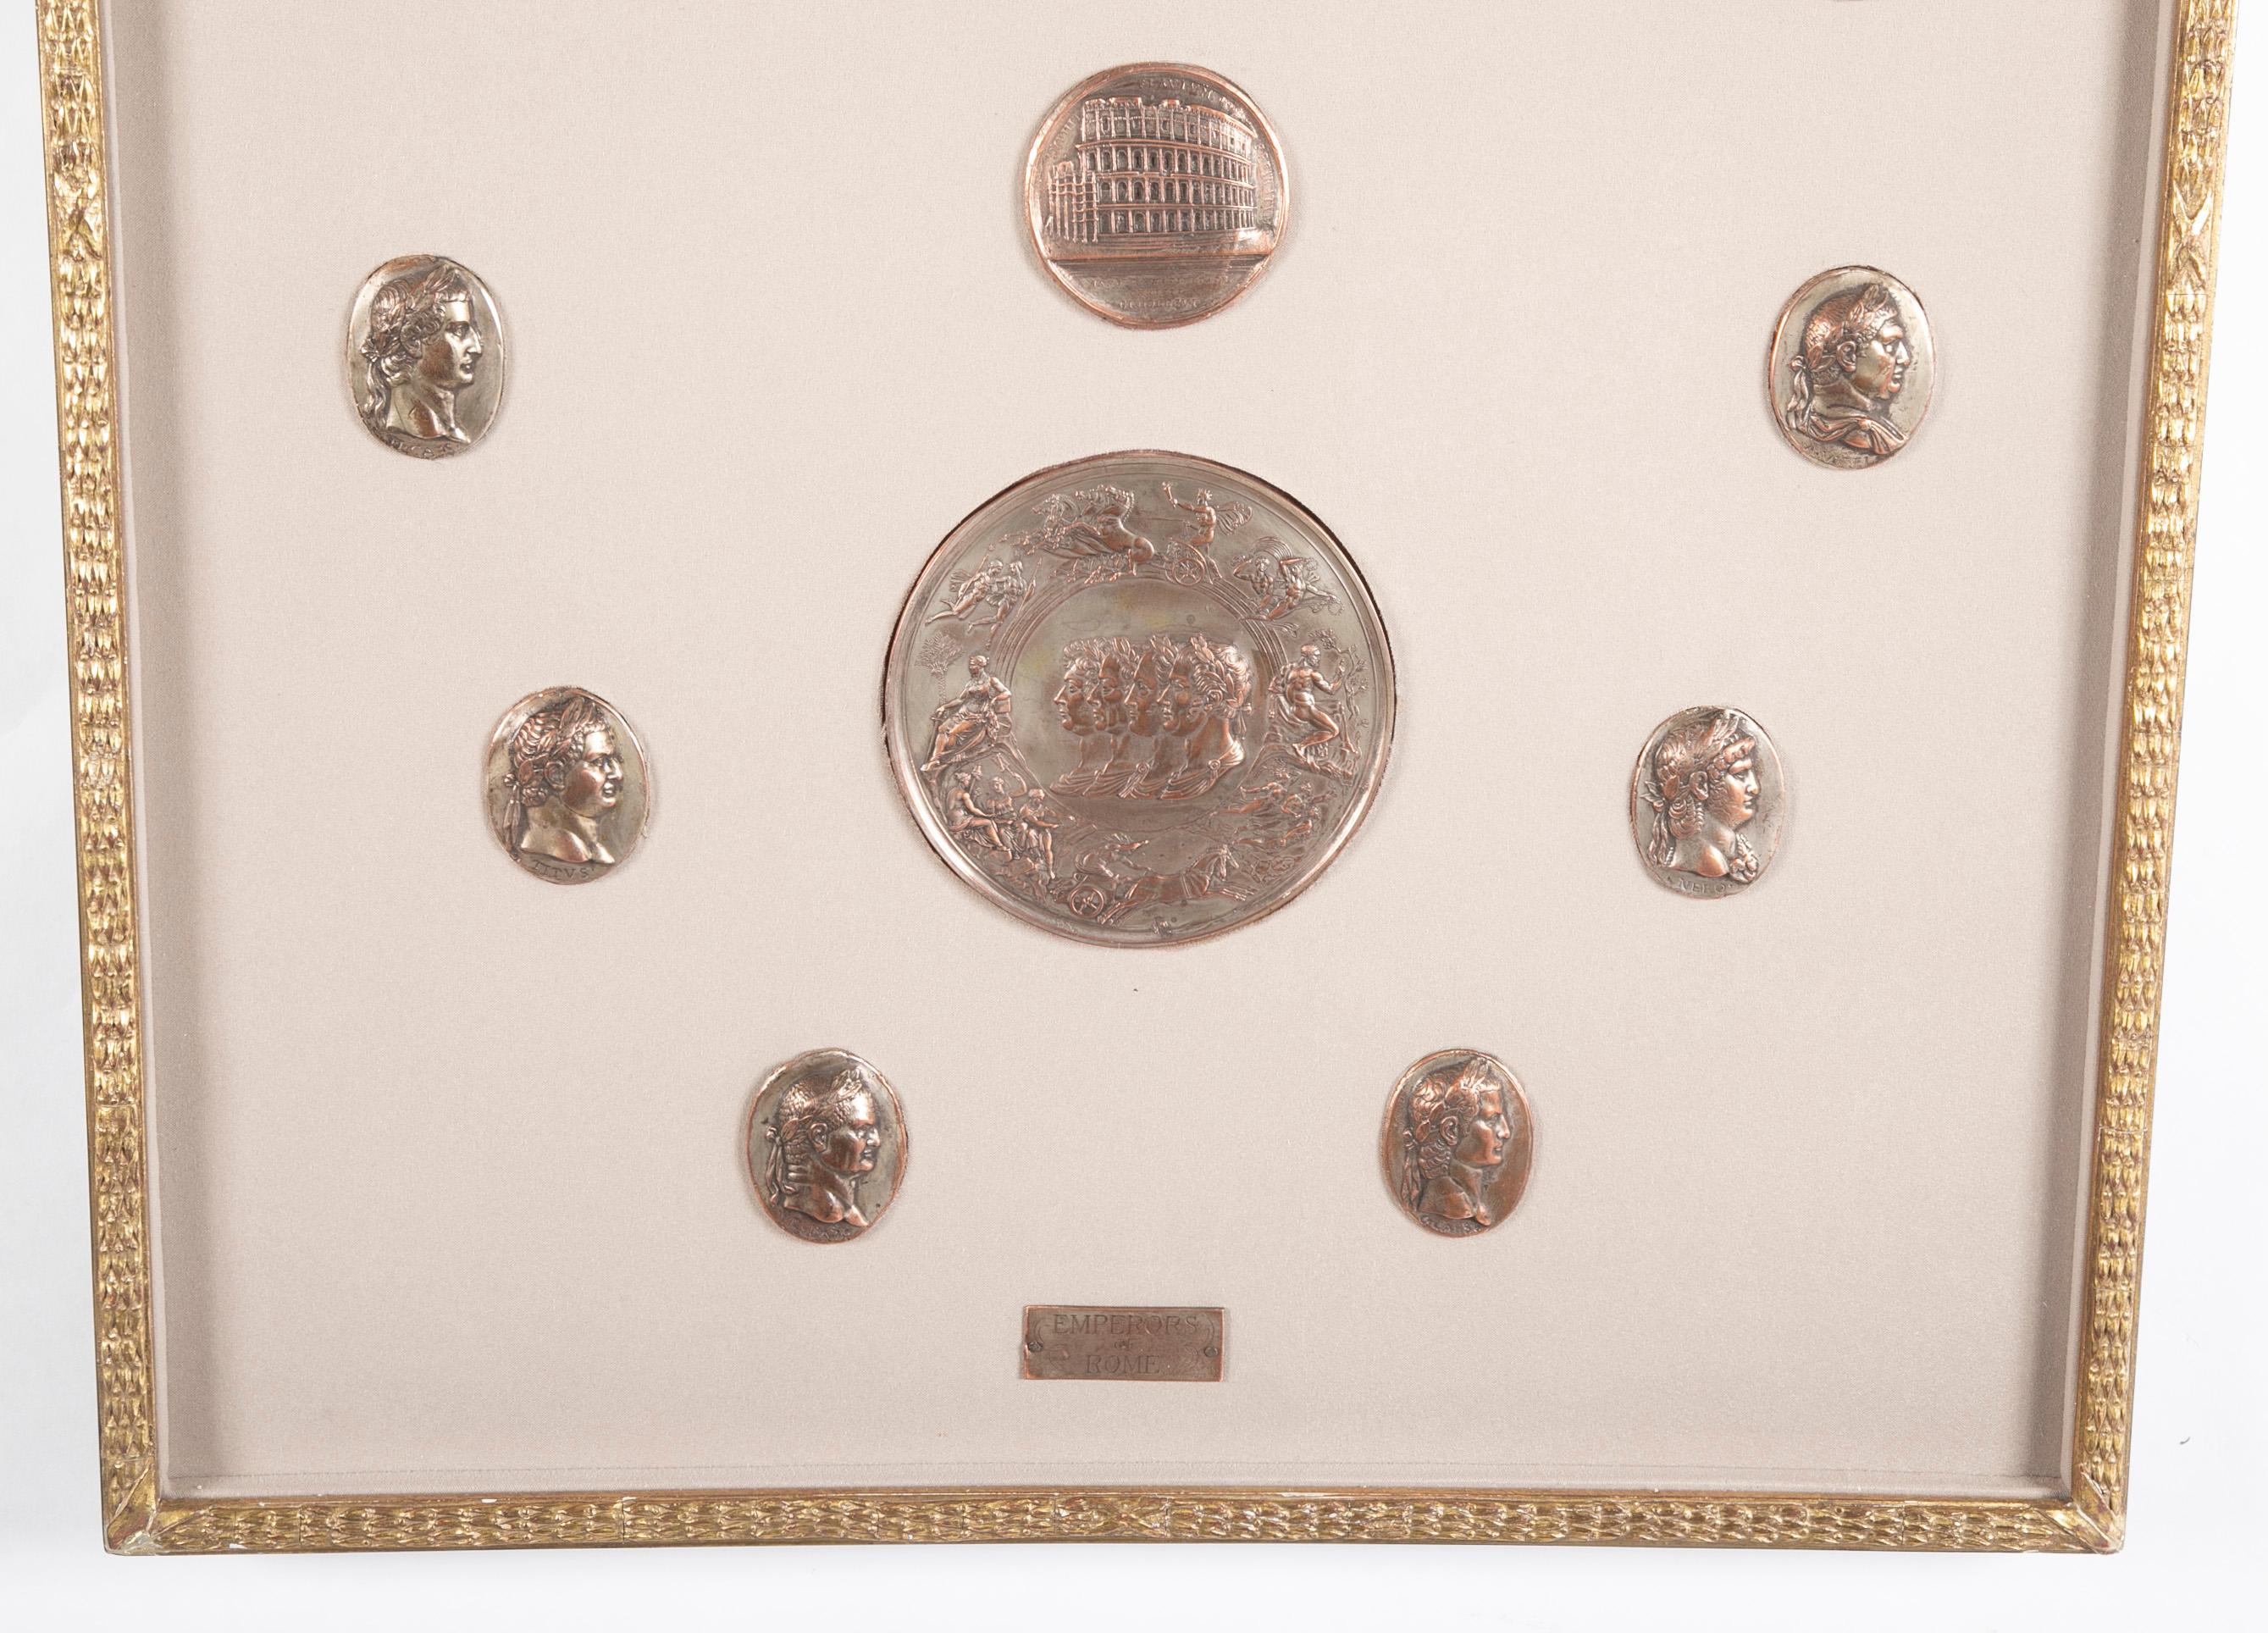 Wunderschönes, gerahmtes Set von versilberten Bronzemedaillons der 12 römischen Kaiser aus dem 19. Jahrhundert, das 3 größere Medaillen umgibt, eine mit der Schlacht der Tritonen, eine weitere mit 4 Dichtern, die Lorbeerblätter tragen, und eine